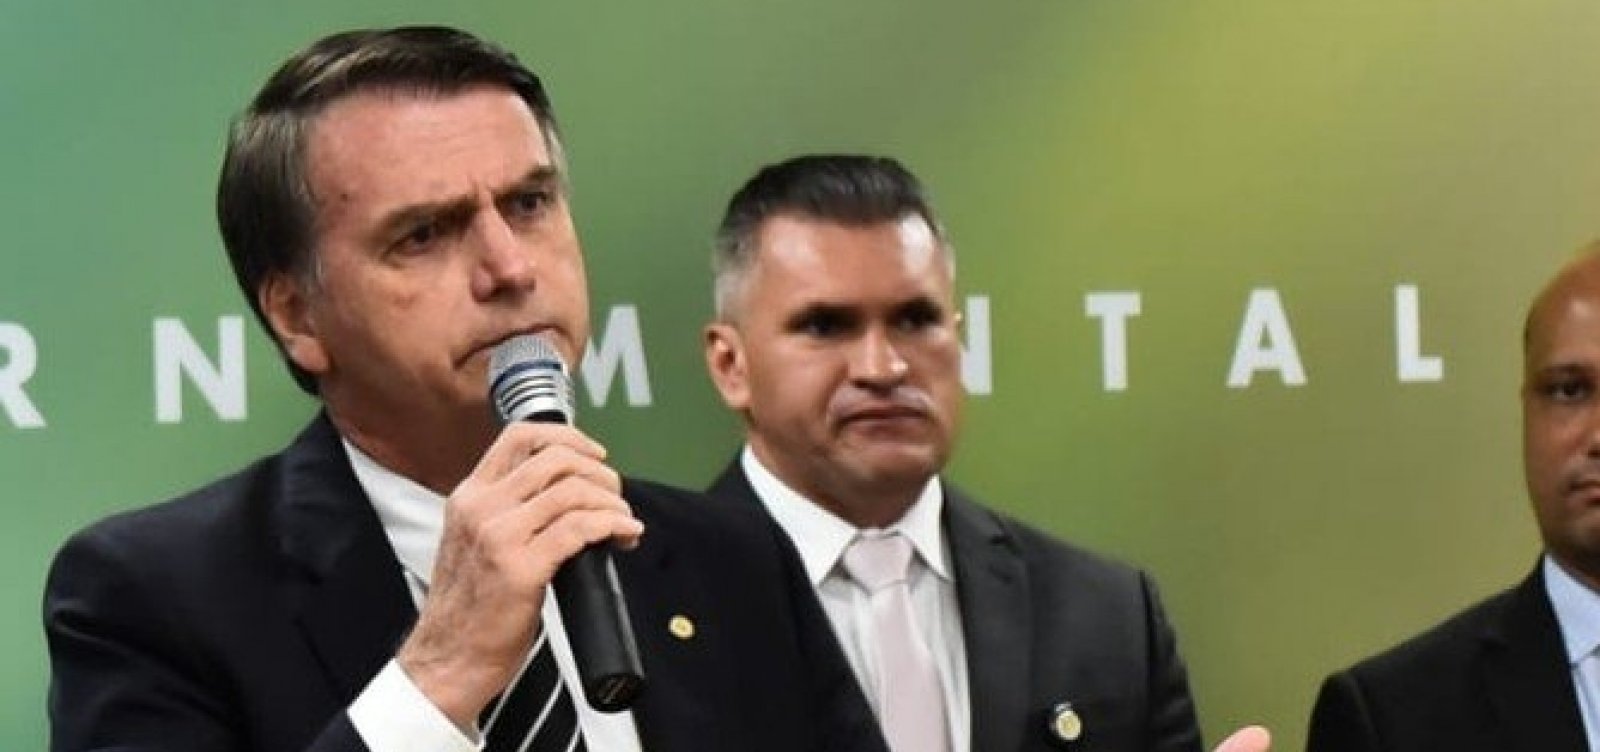 Zé Rocha presenteia Bolsonaro com camisa do Vitória e organizada de esquerda do clube protesta